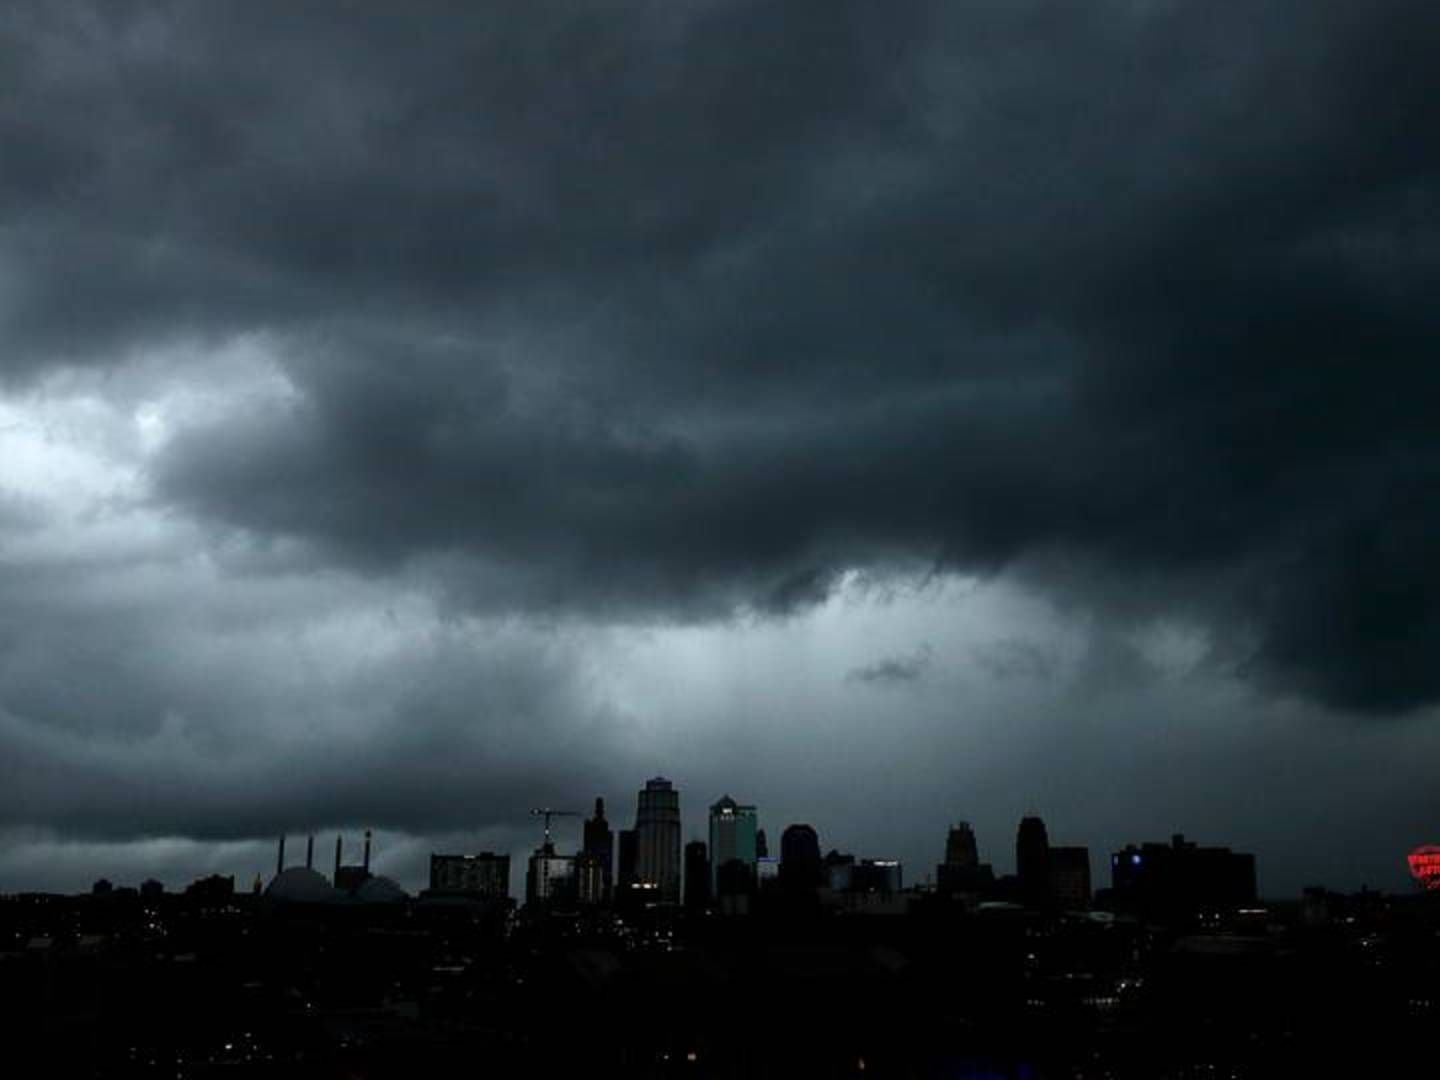 Der bliver bl.a. mere ekstremt vejr, konkluderer ny klimarapport fra FN. Her over Kansas City i USA. | Foto: AP/Charlie Riedel